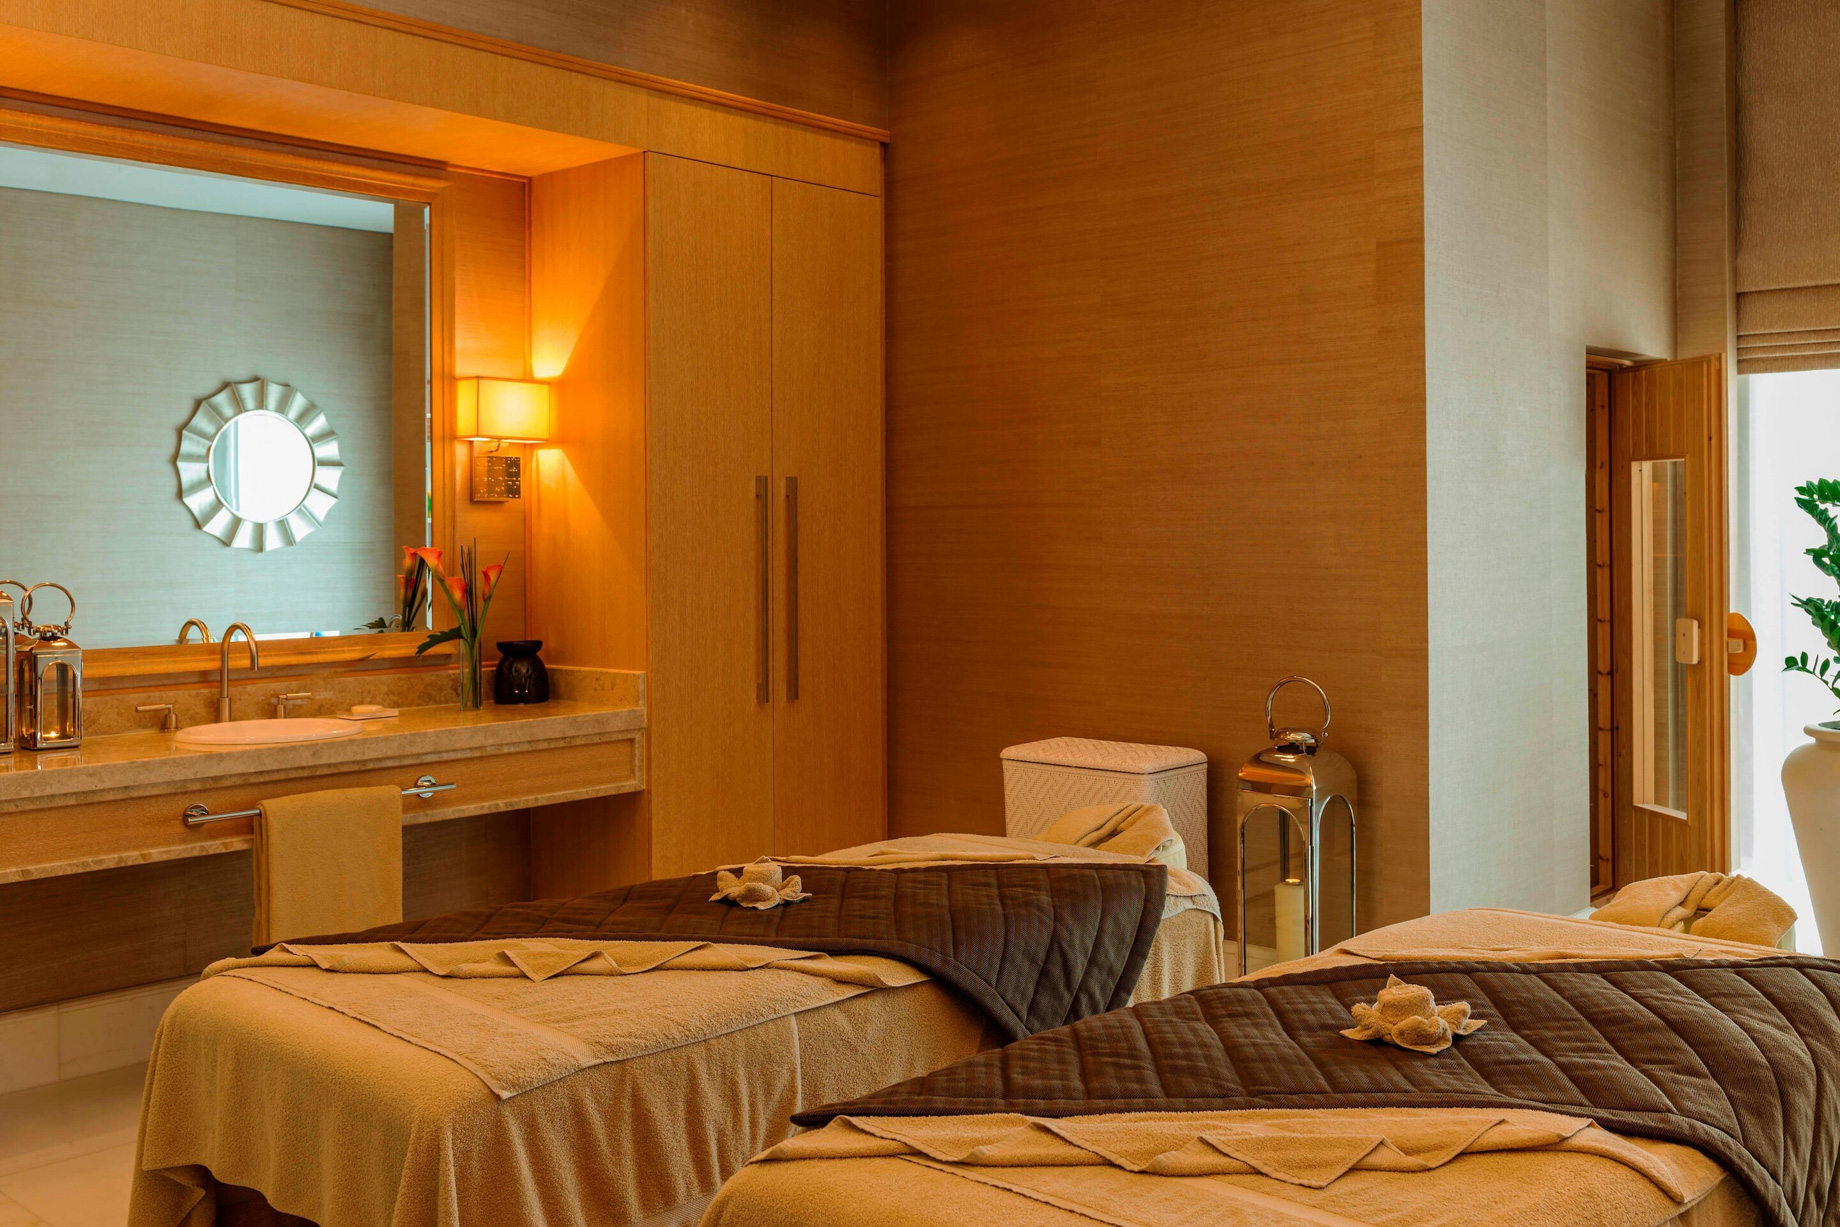 The St. Regis Saadiyat Island Resort - Abu Dhabi, UAE - Royal Suite Treatment Room